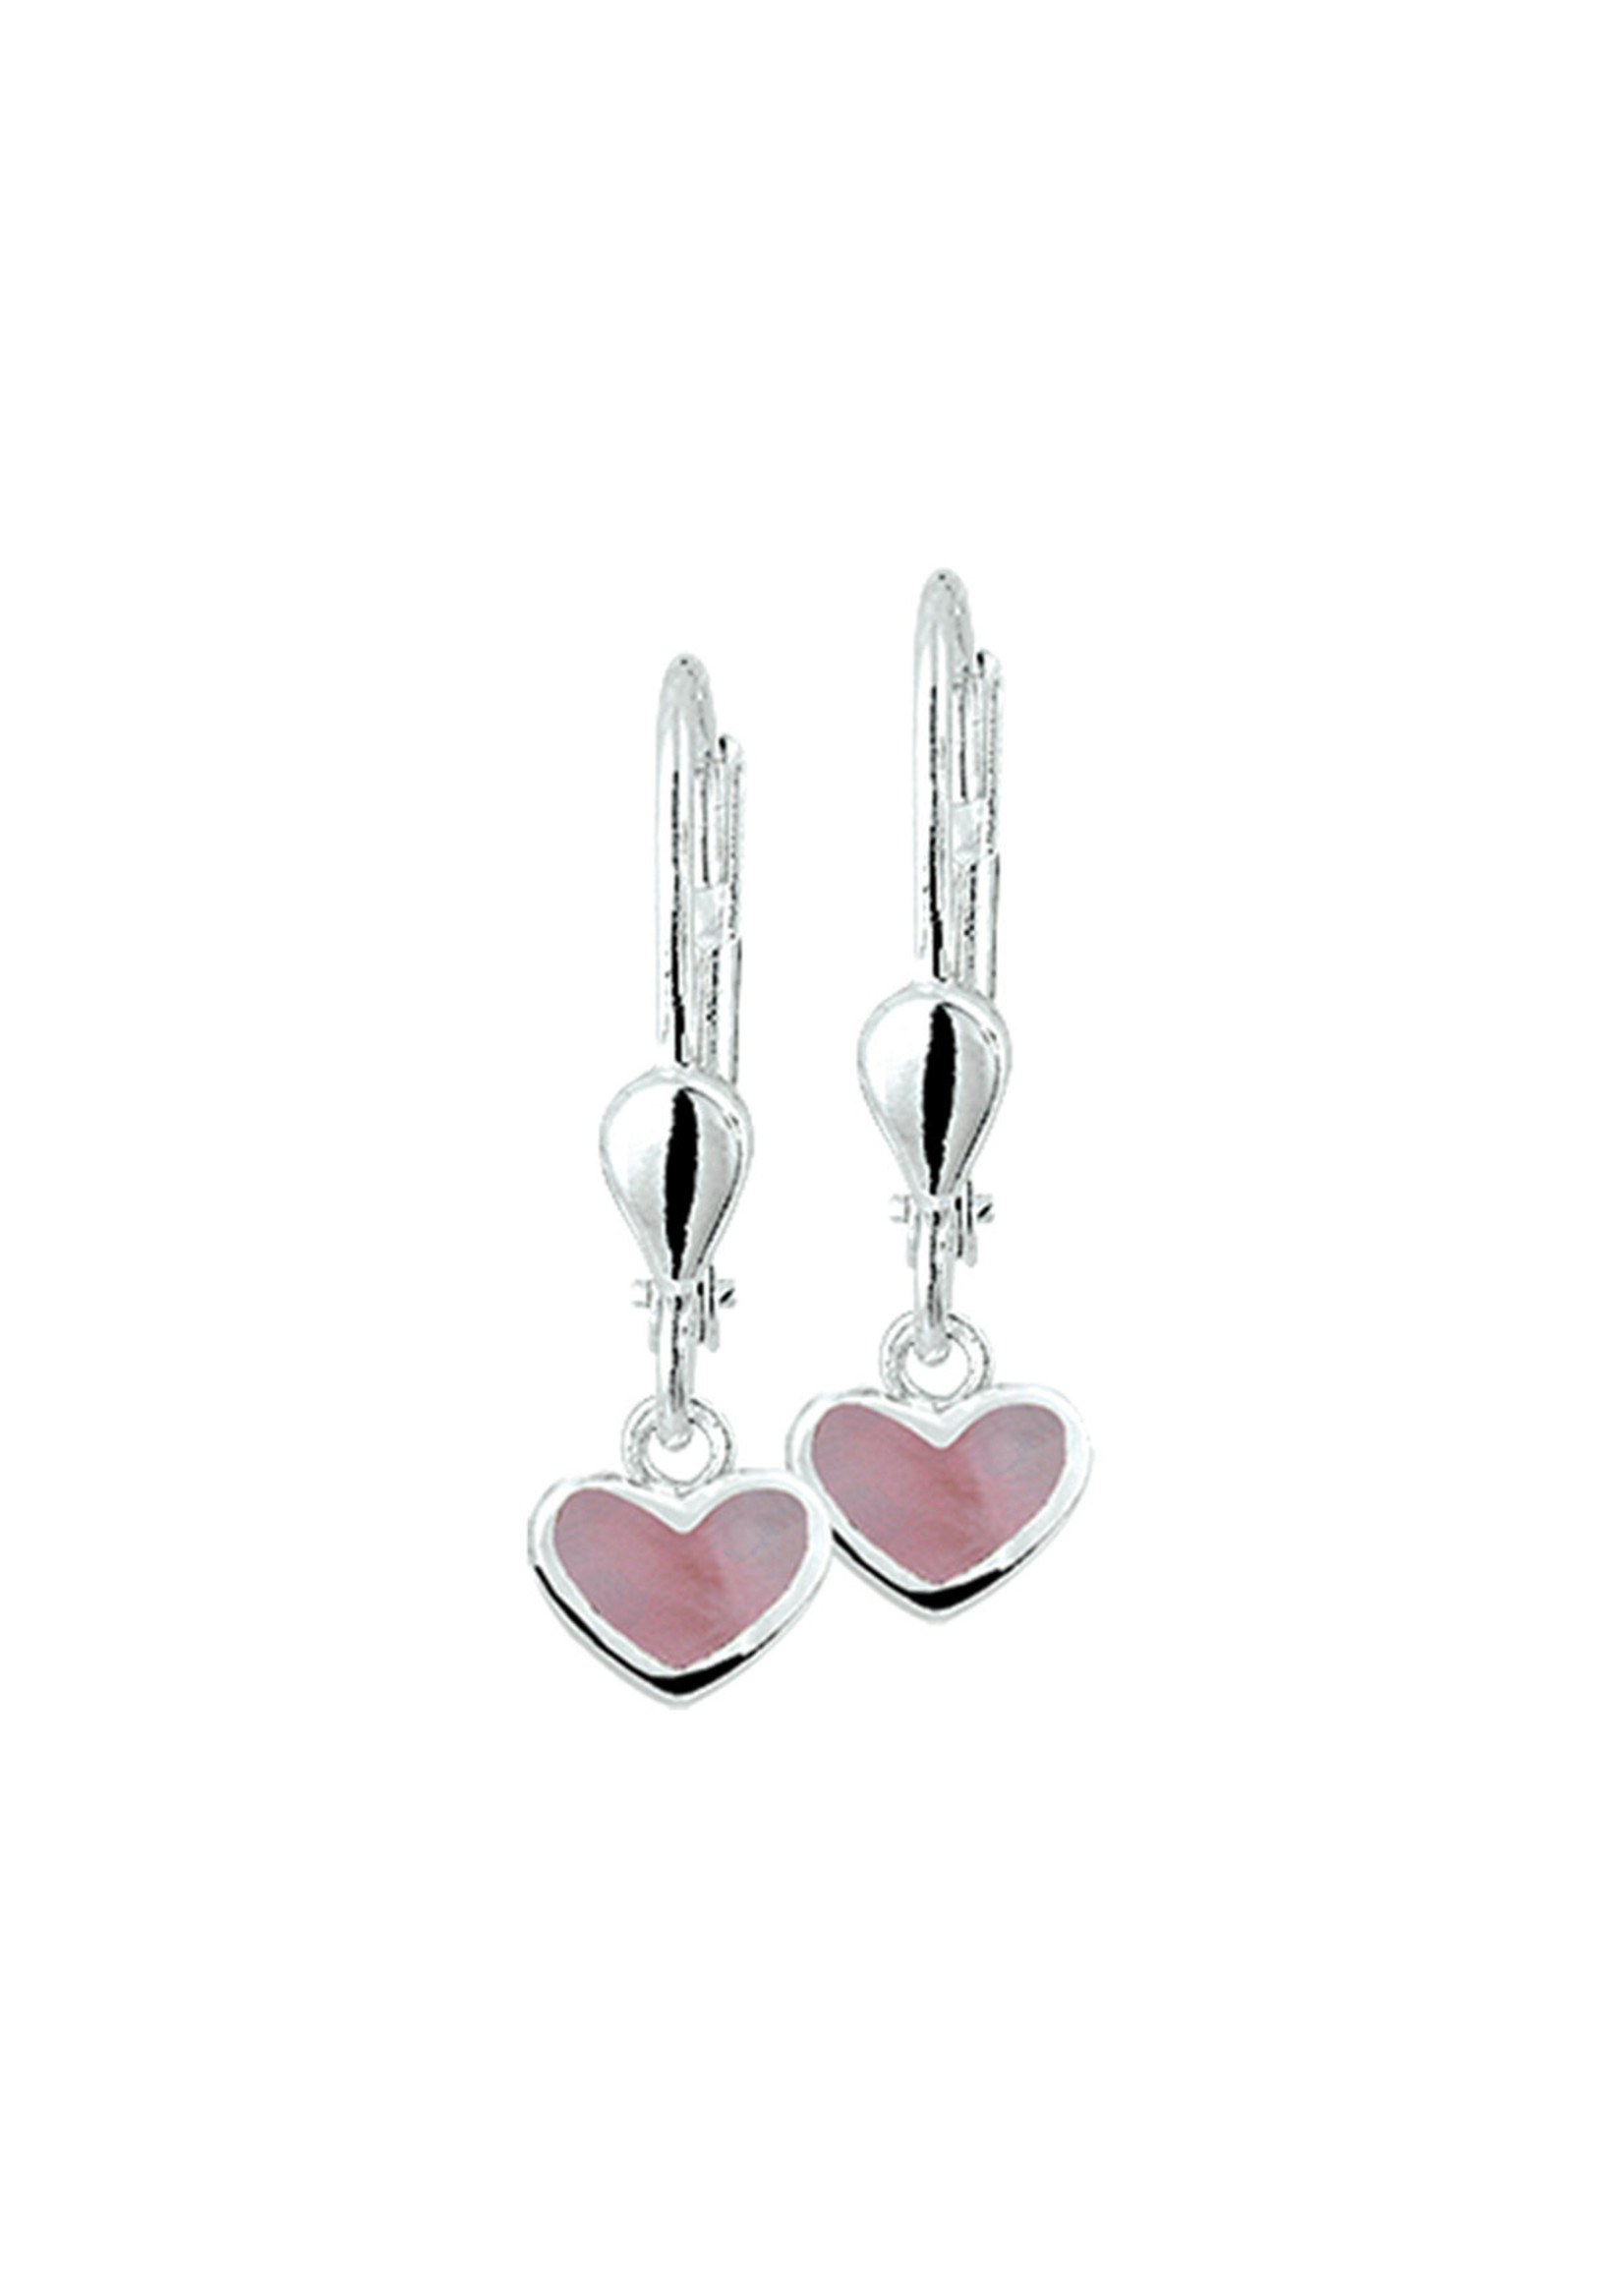 Cataleya jewels Zilveren kinder oorhangers met een roze parelmoer hartje